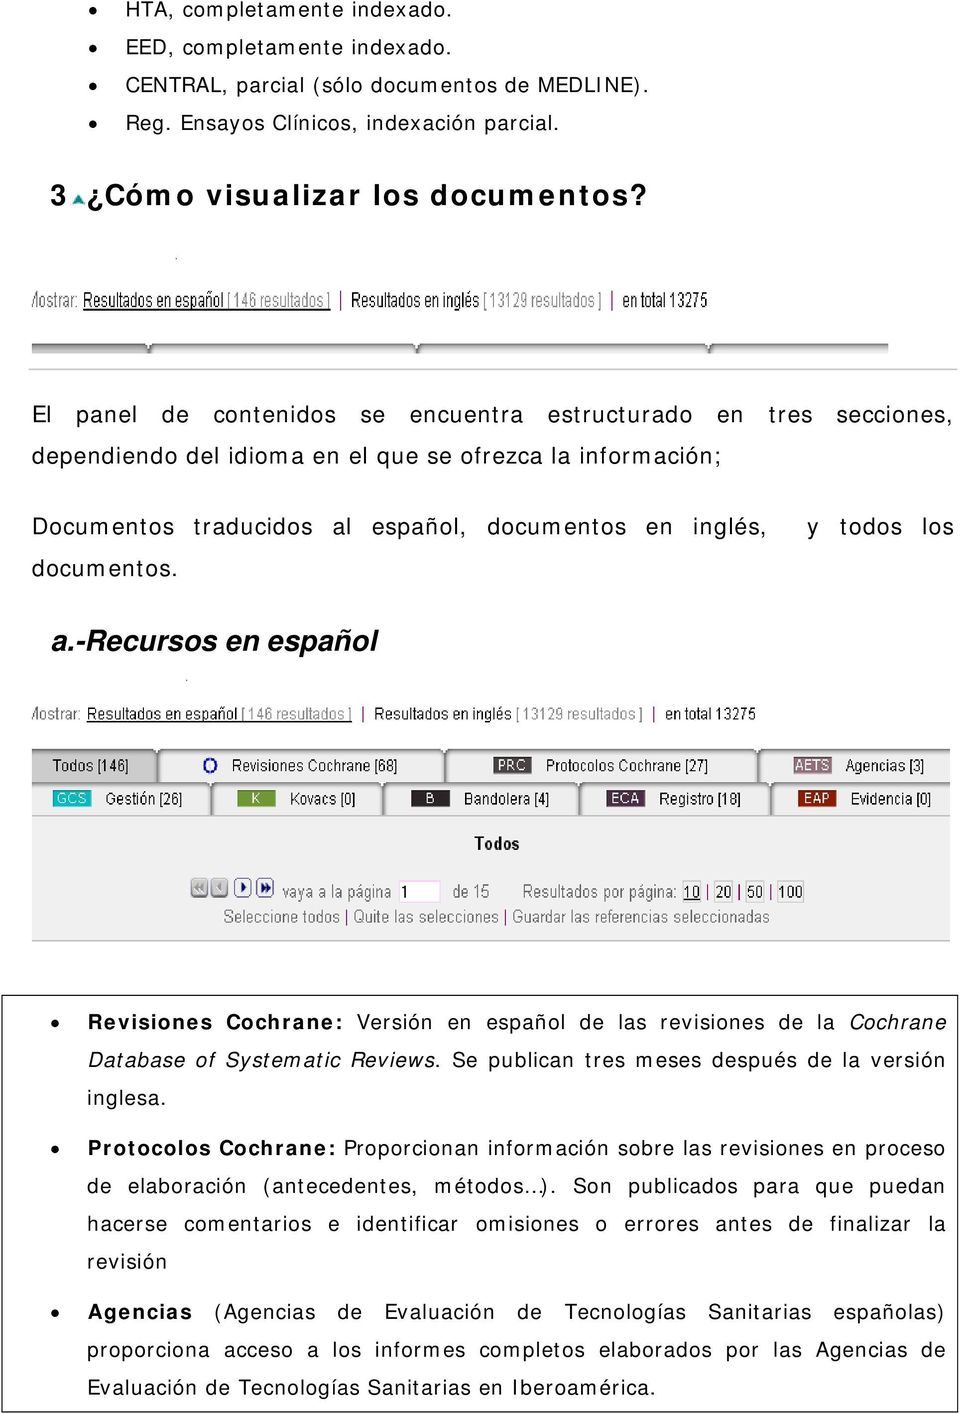 y todos los a.-recursos en español Revisiones Cochrane: Versión en español de las revisiones de la Cochrane Database of Systematic Reviews. Se publican tres meses después de la versión inglesa.